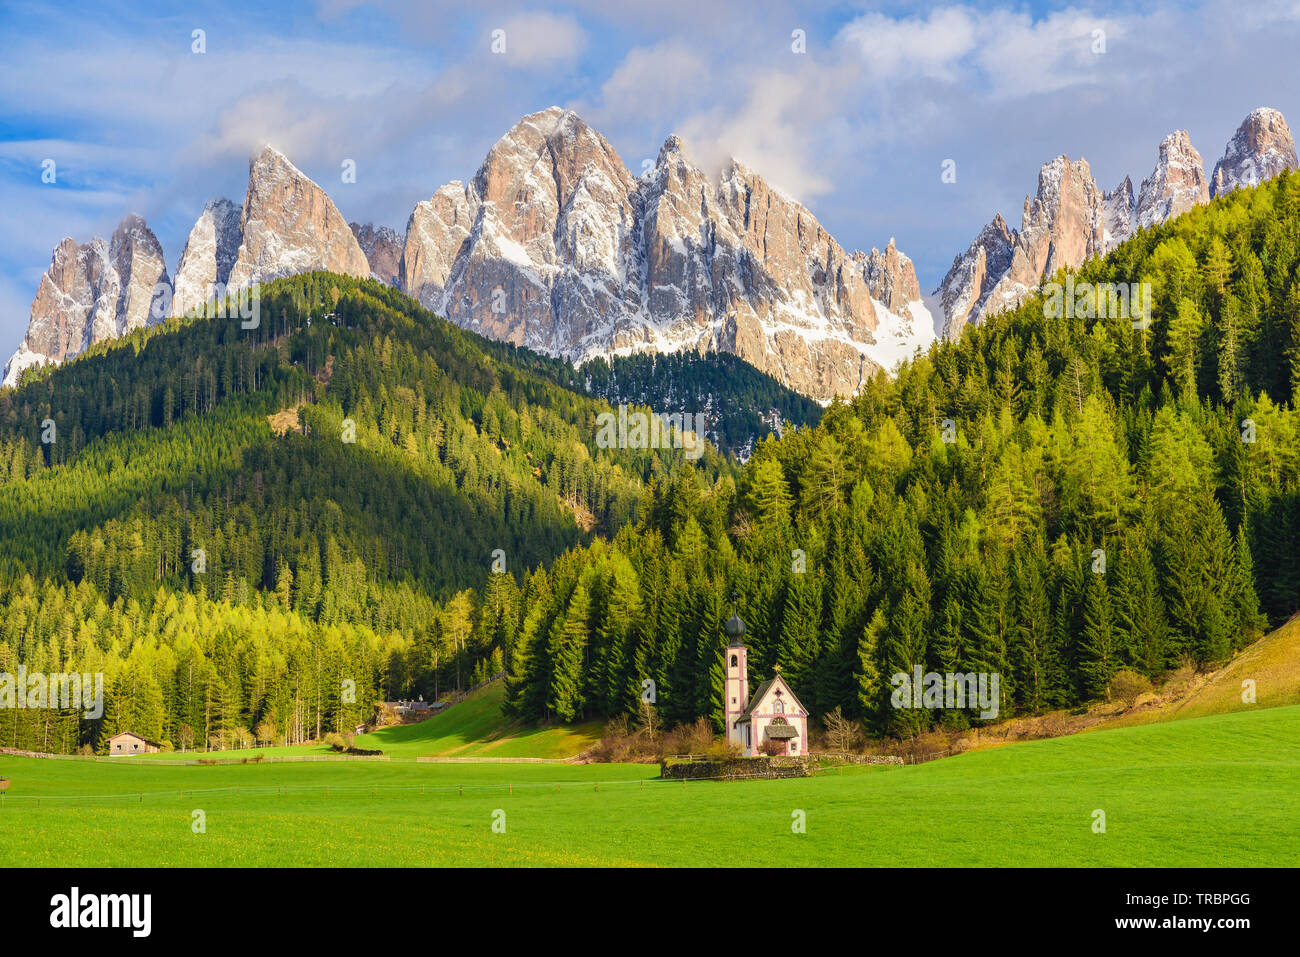 Paysage ensoleillé de cols alpins. L'église St Johann avec de belles montagnes des Dolomites, Santa Maddalena, Val Di Funes, Dolomites, Italie. Banque D'Images